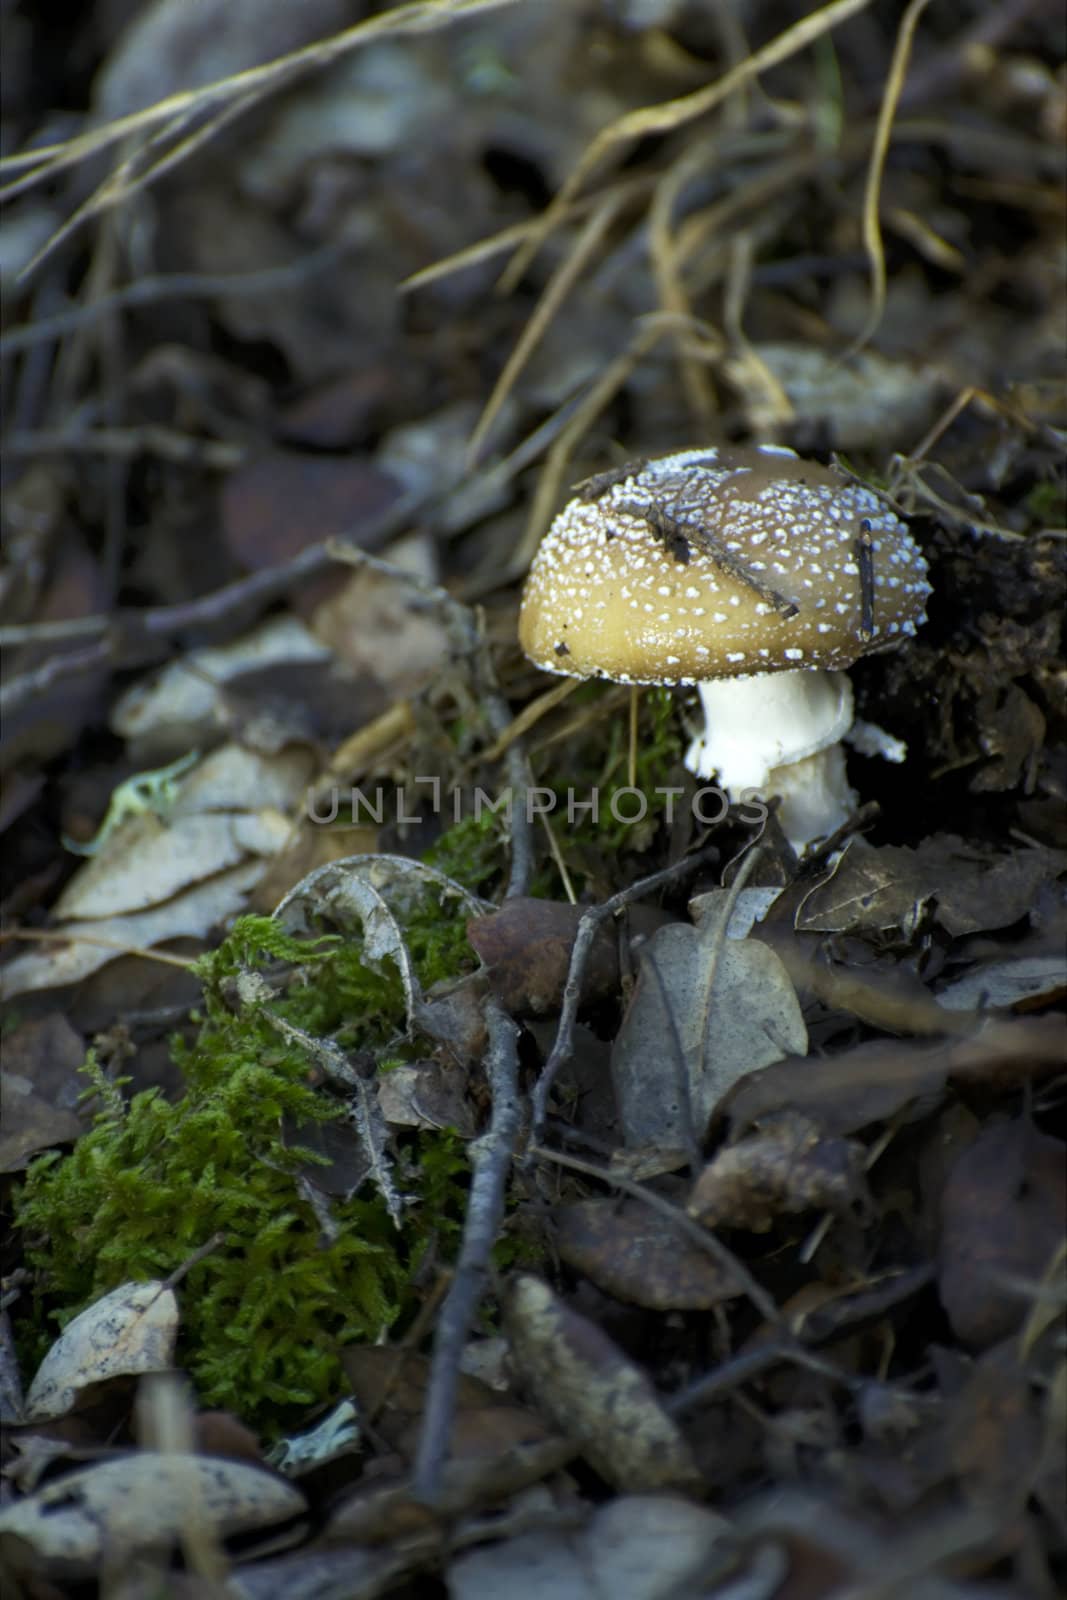 Mushroom growing between fallen autumn leaves